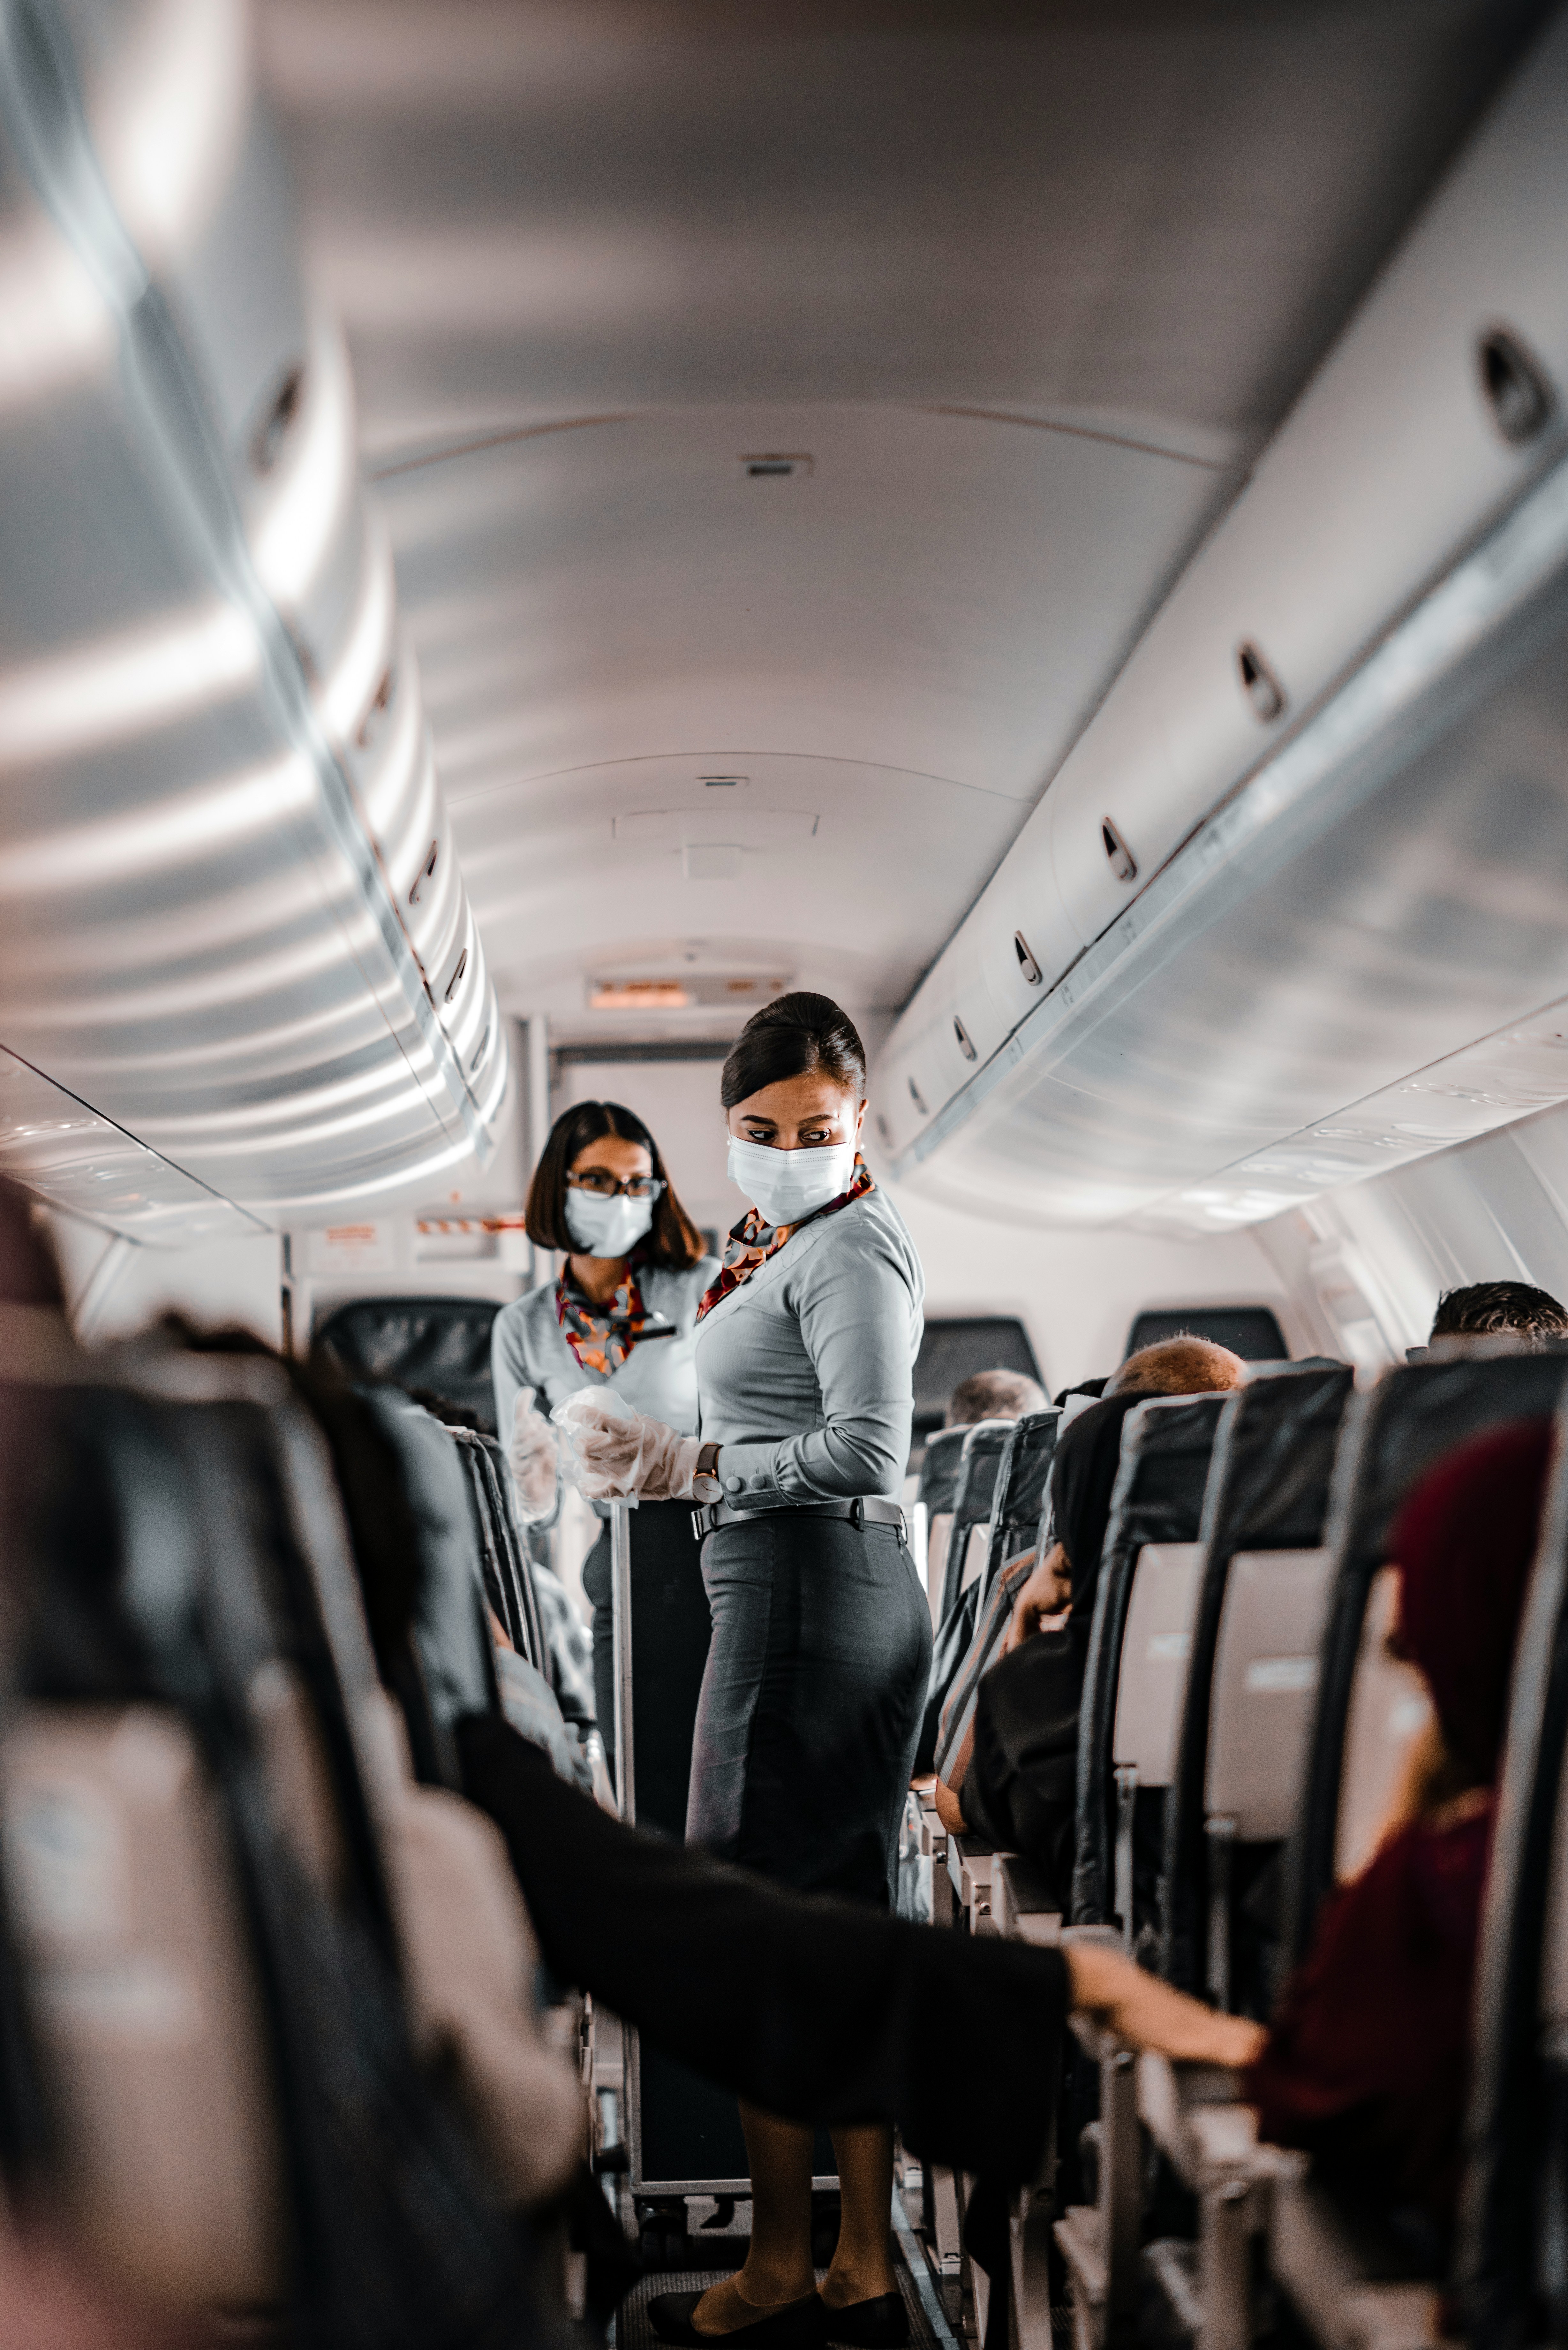 Les hôtesses de l'air s'occupent des passagers | Source : Unsplash